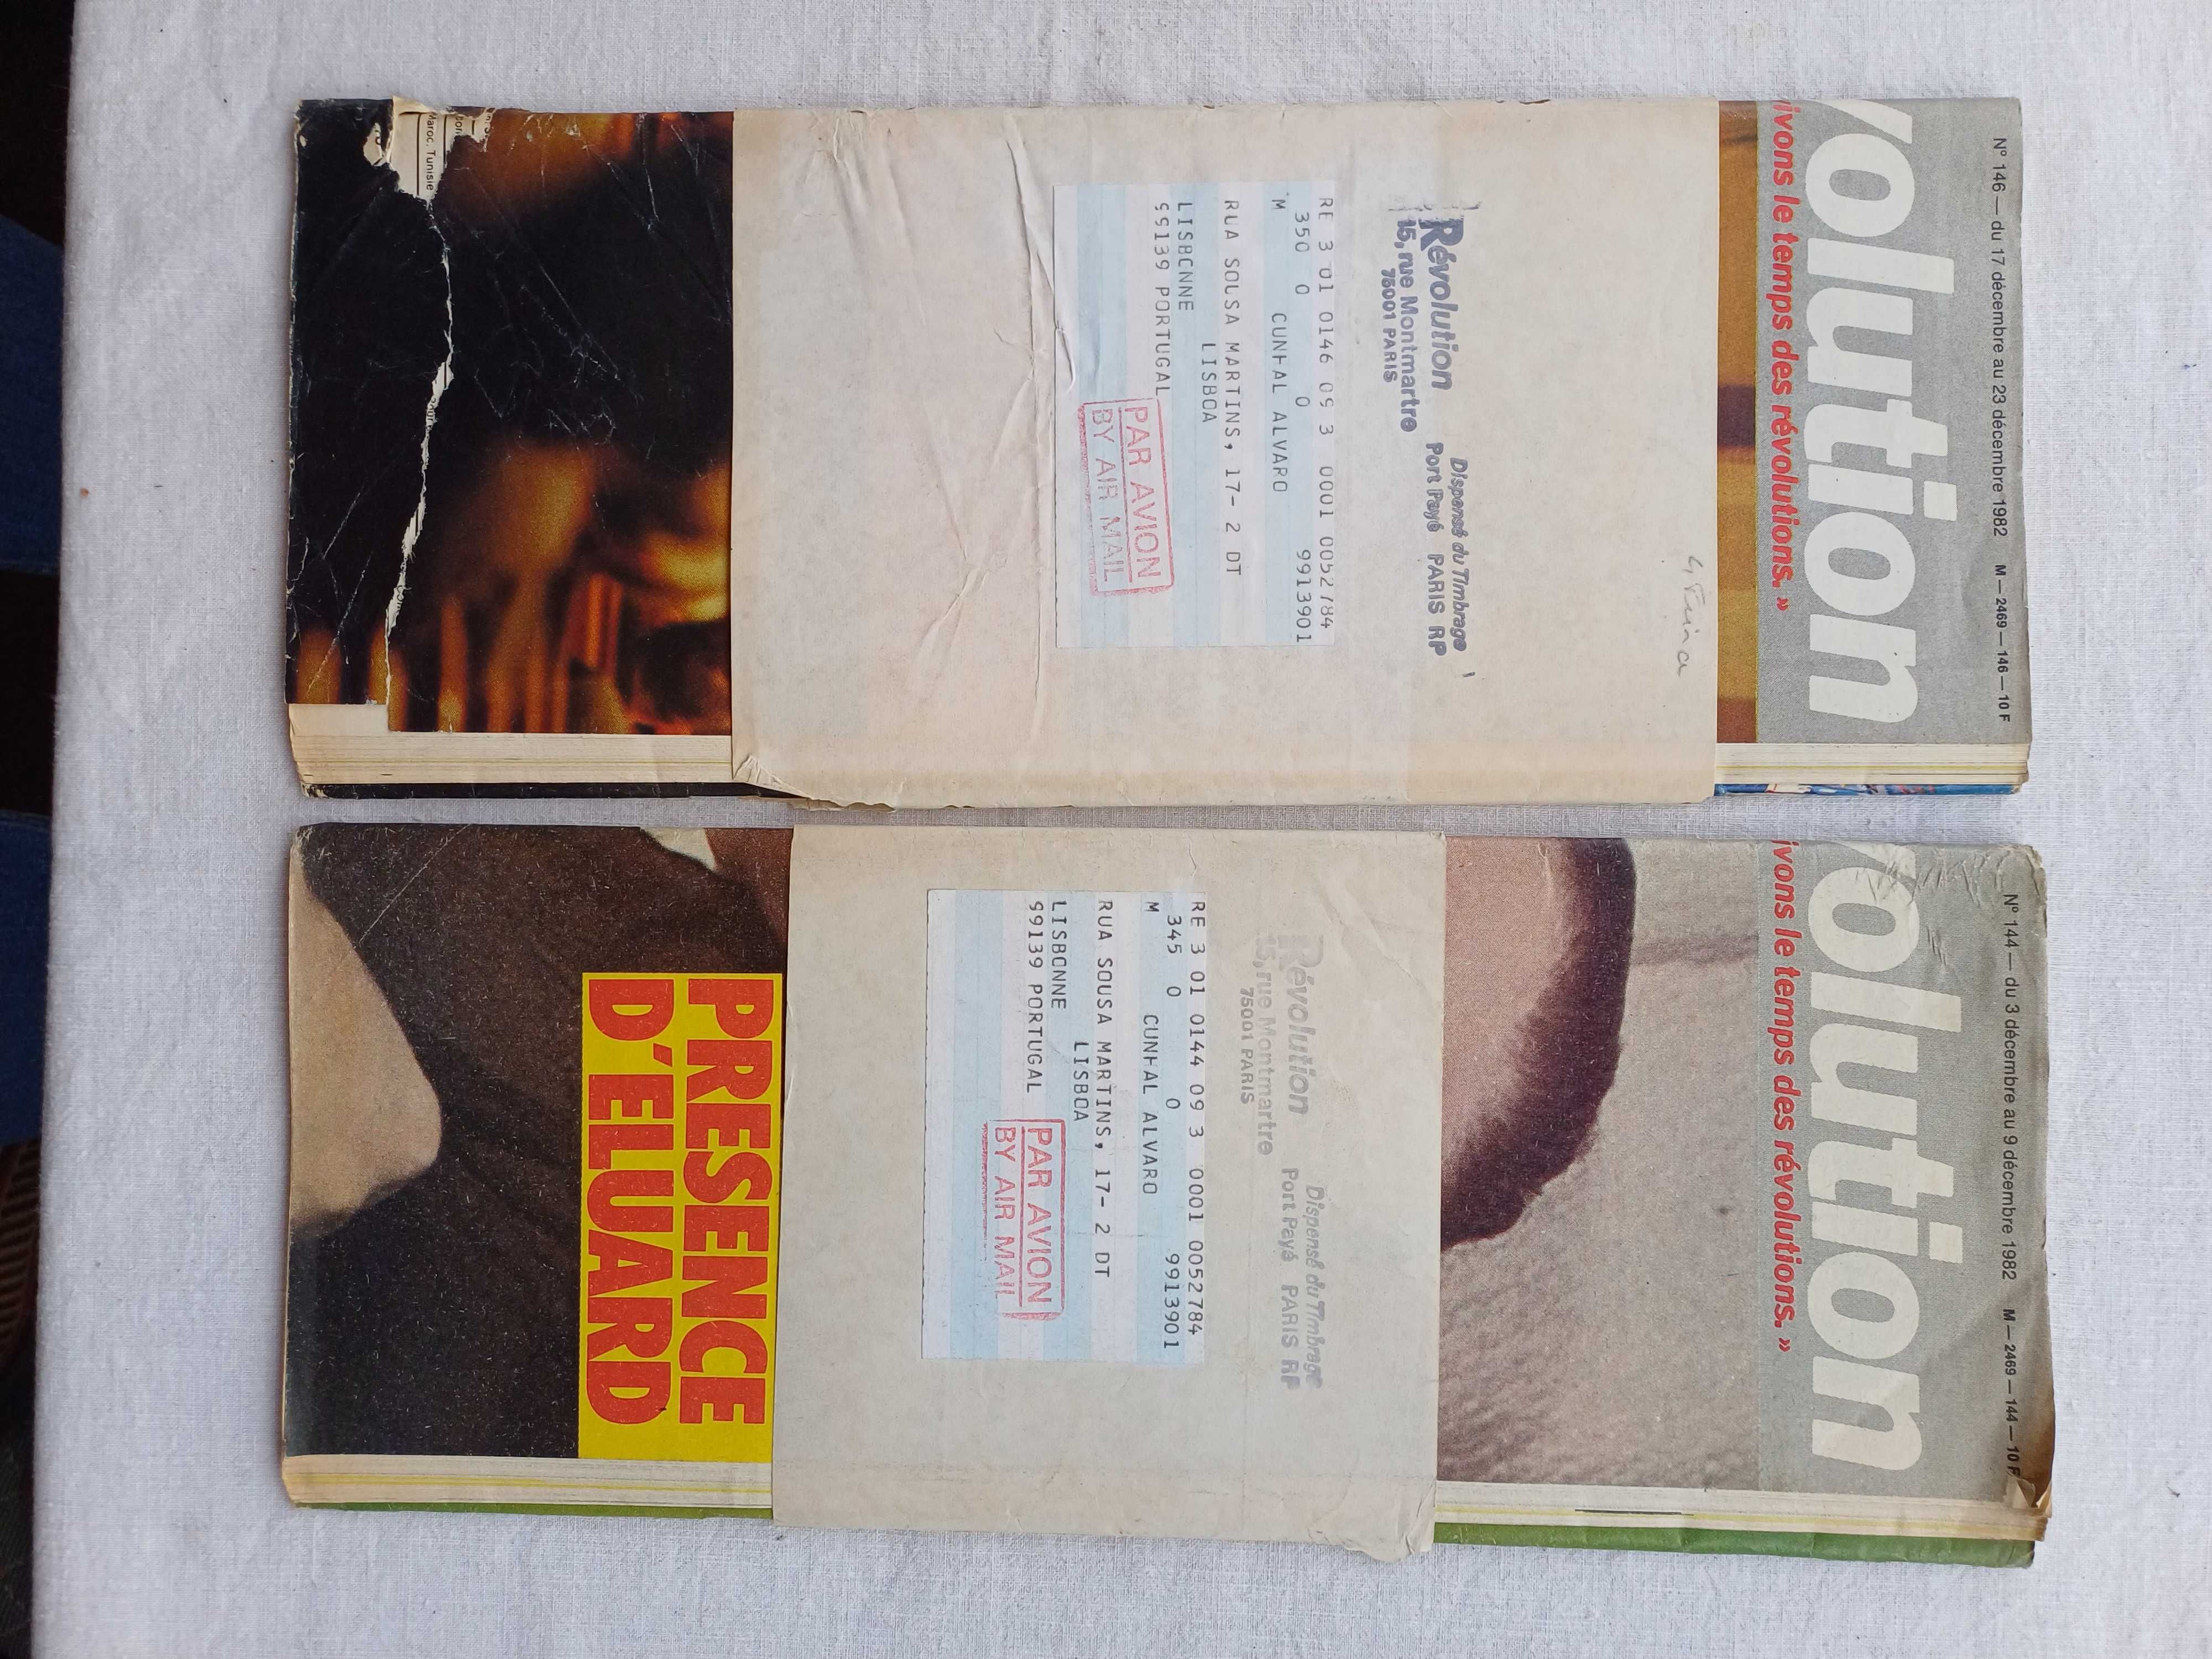 Revistas Révolution de 1982 dirigidas a Álvaro Cunhal